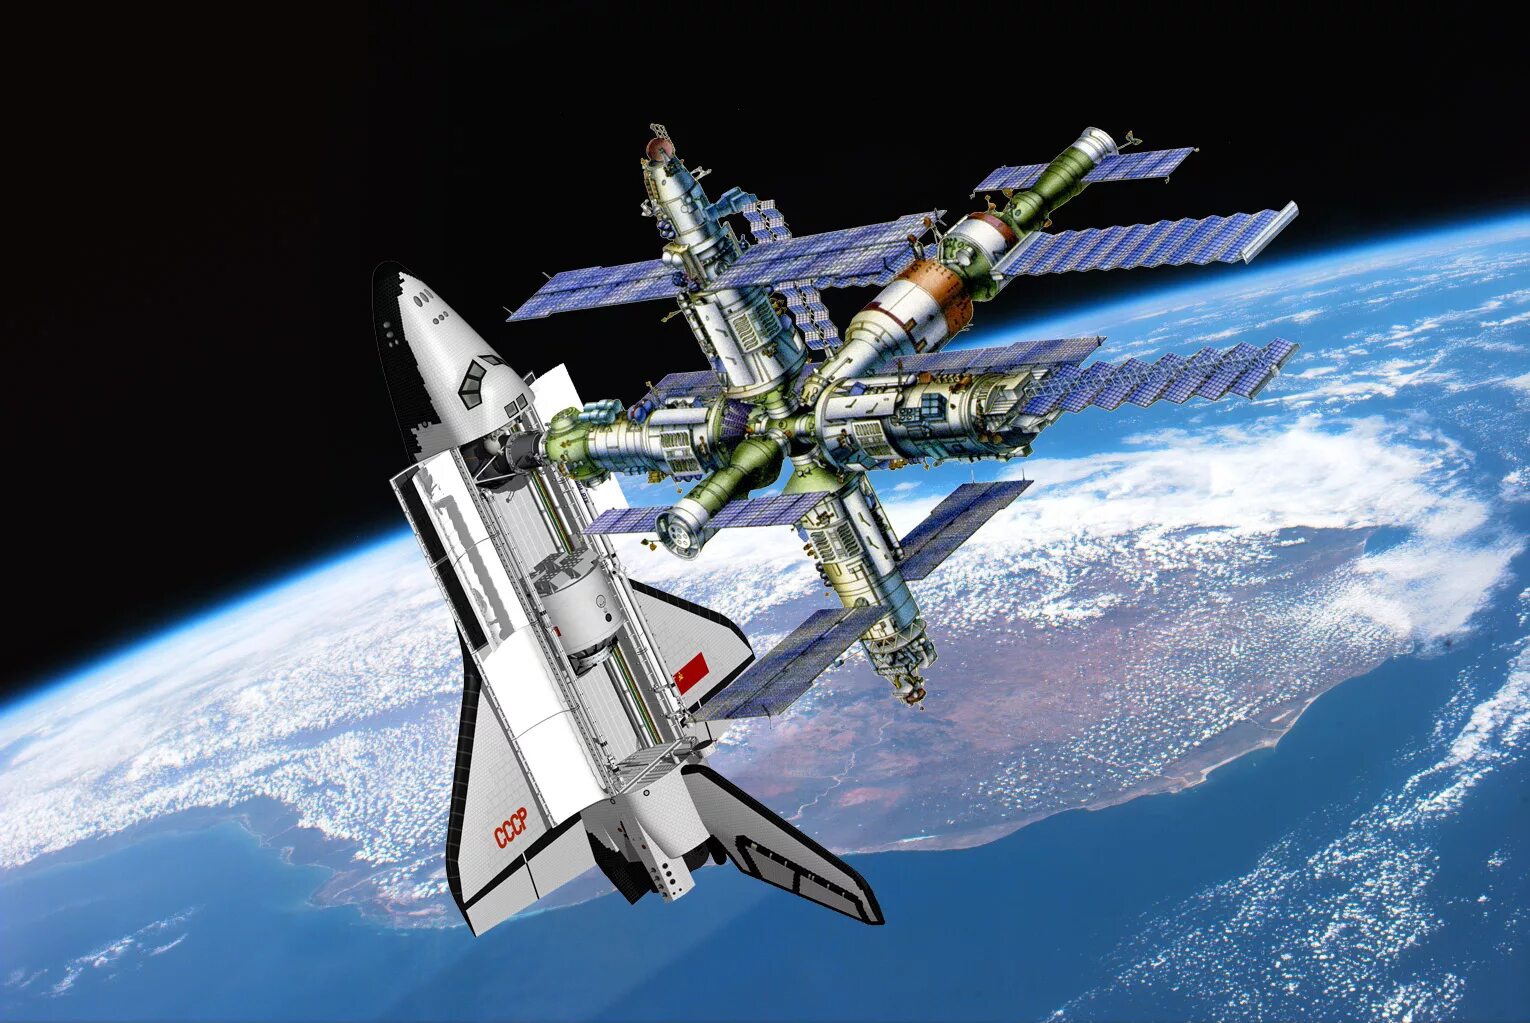 02 mir. Орбитальная станция мир 1986. Буран космический корабль и станция мир. Первая многомодульная орбитальная станция («мир»).. Мир-2 орбитальная станция.